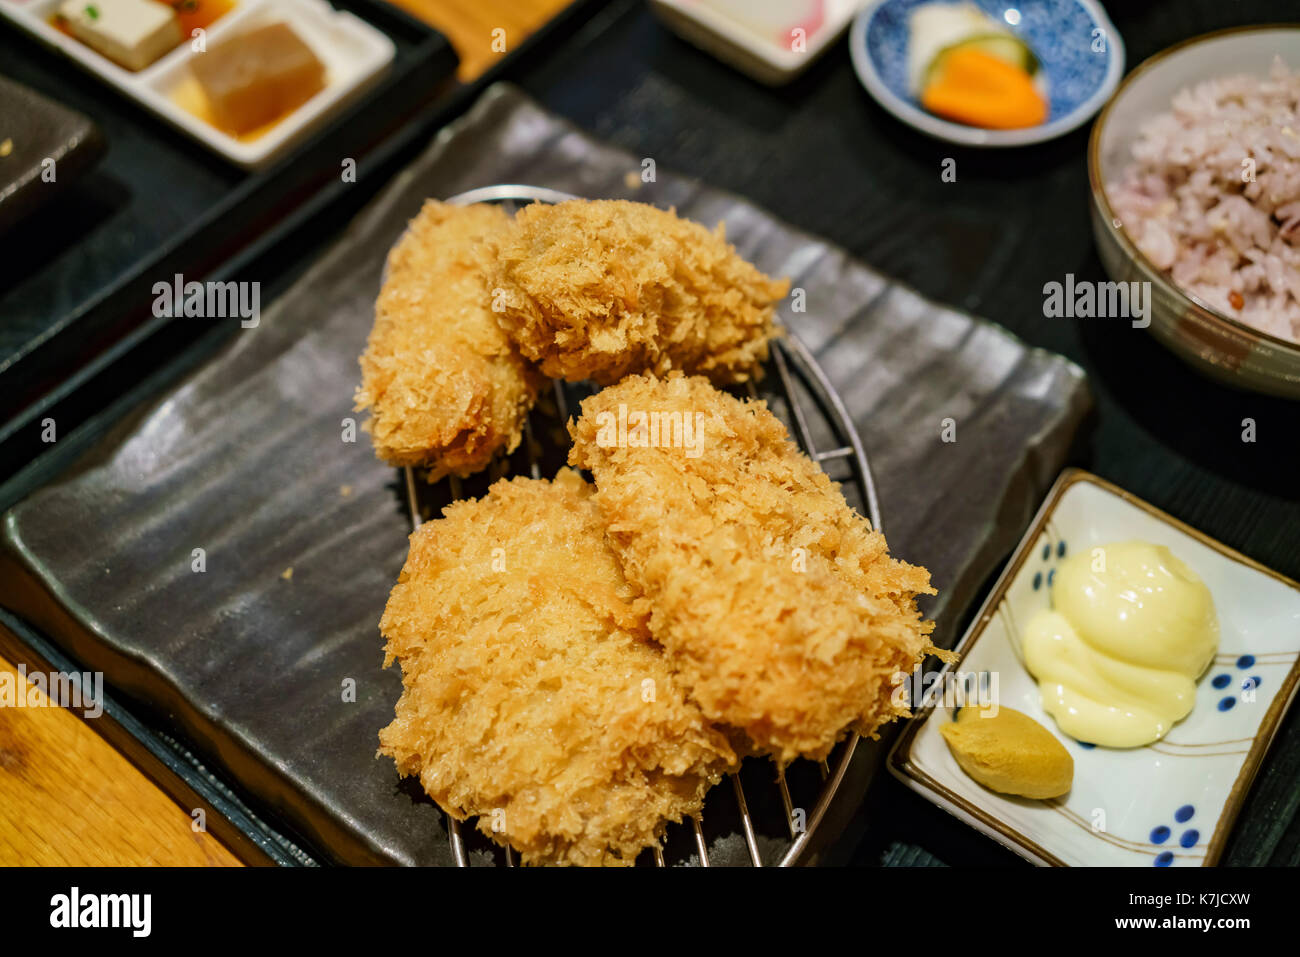 Delicioso estilo japonés freír las chuletas y ostra, comimos en los angeles, California, EE.UU. Foto de stock